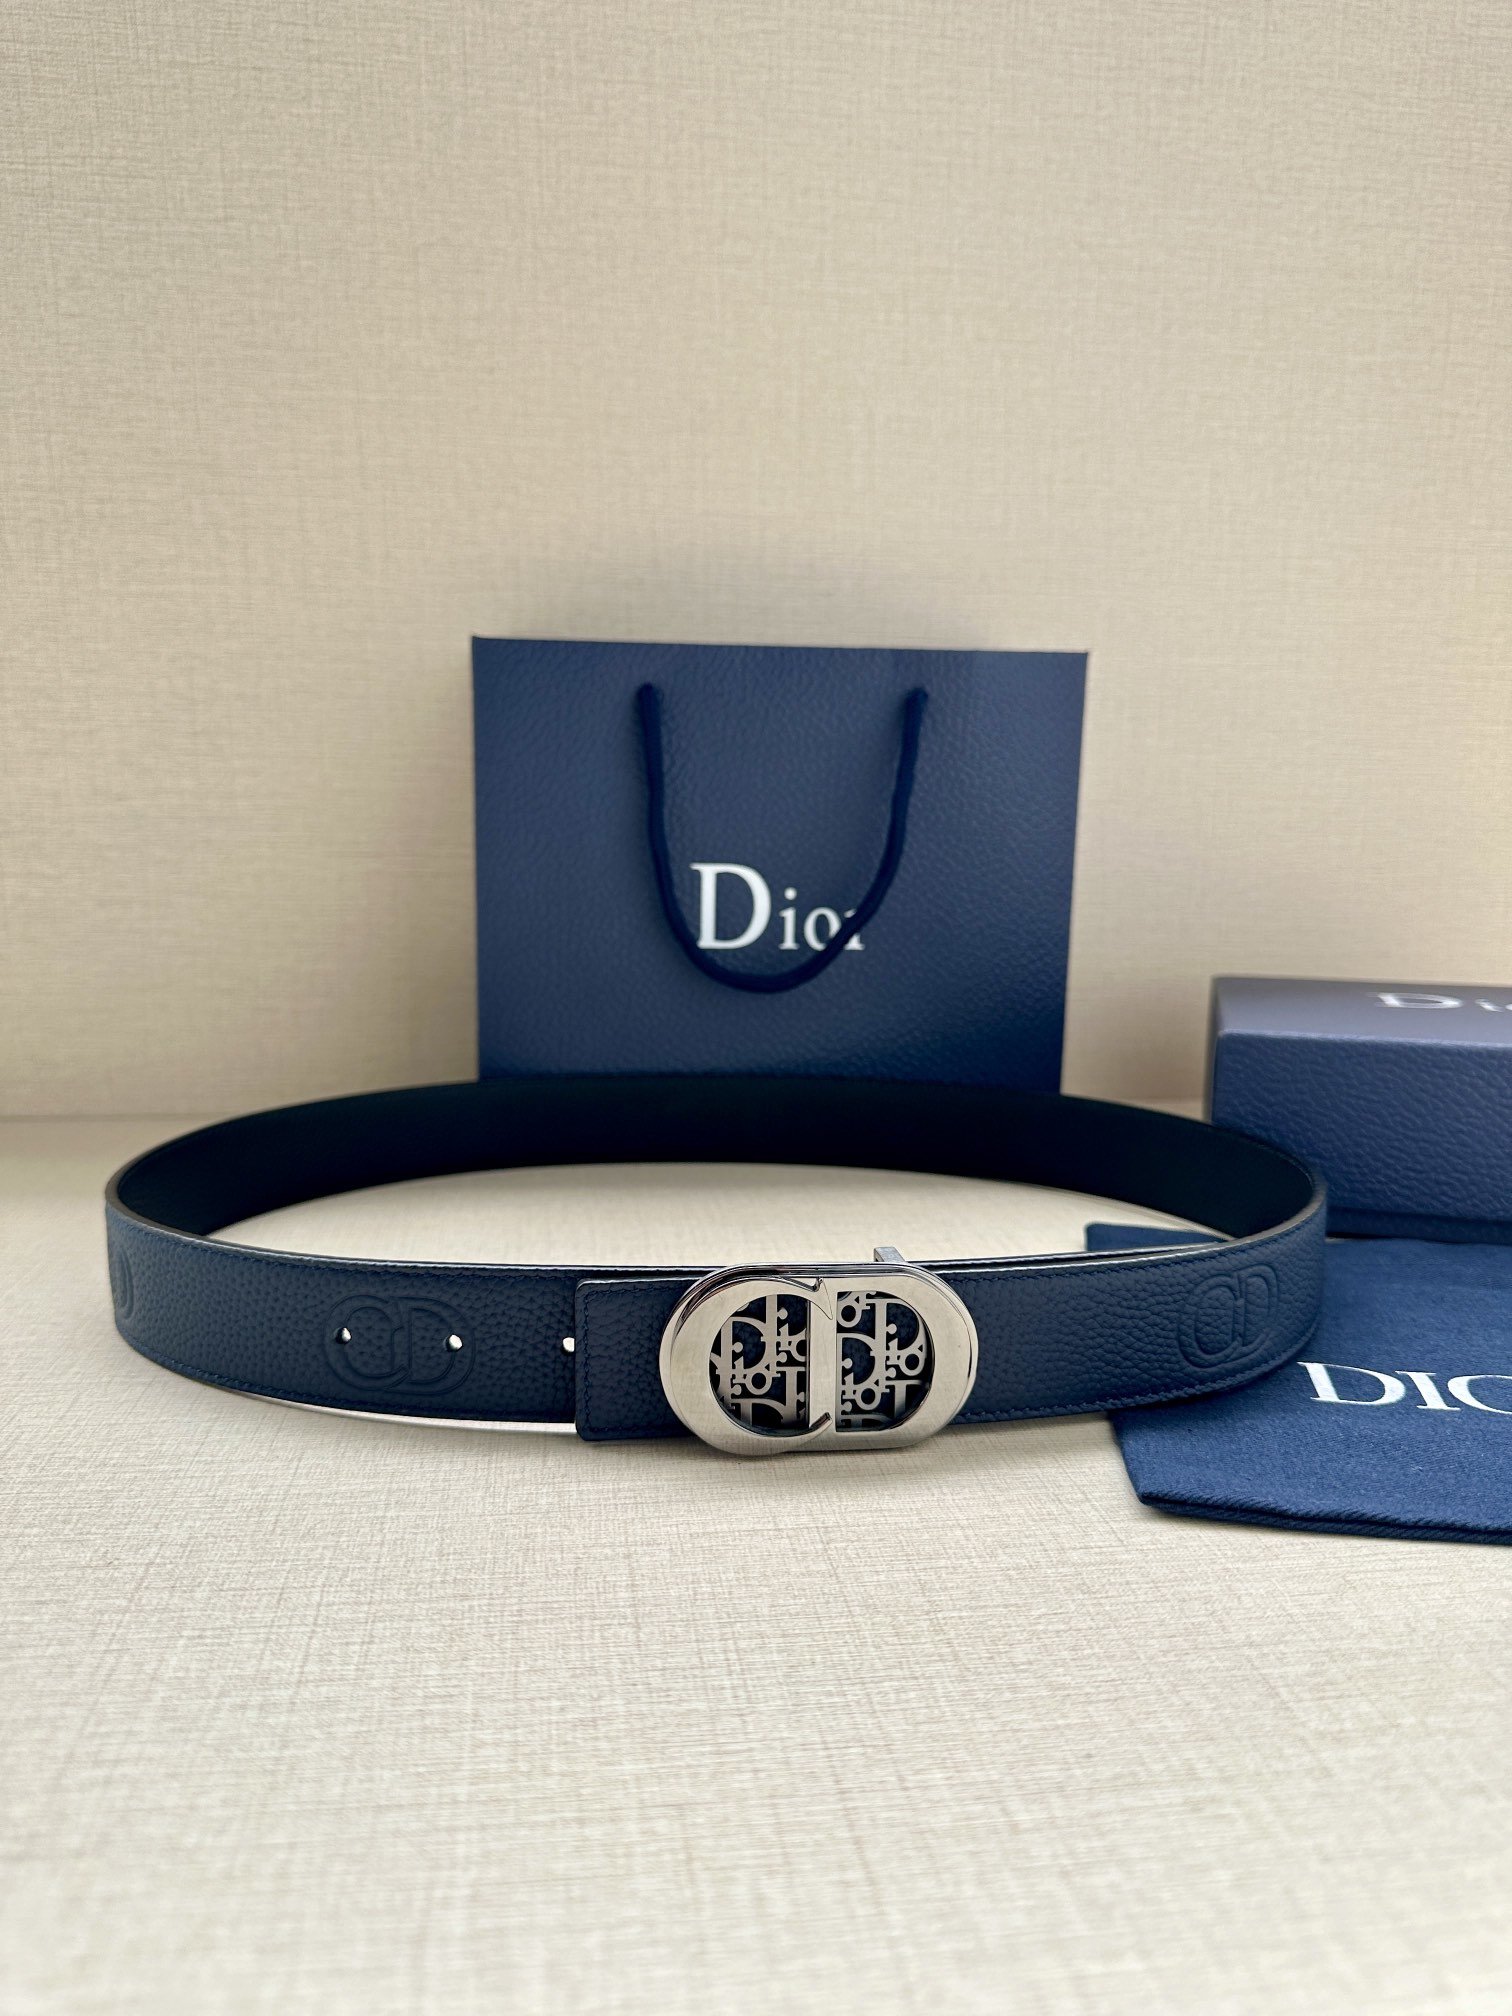 Dior这款35毫米双面腰带结合典雅气质与摩登风范一面则采用迪奥灰粒面牛皮革另一面则采用同色调压花CDI